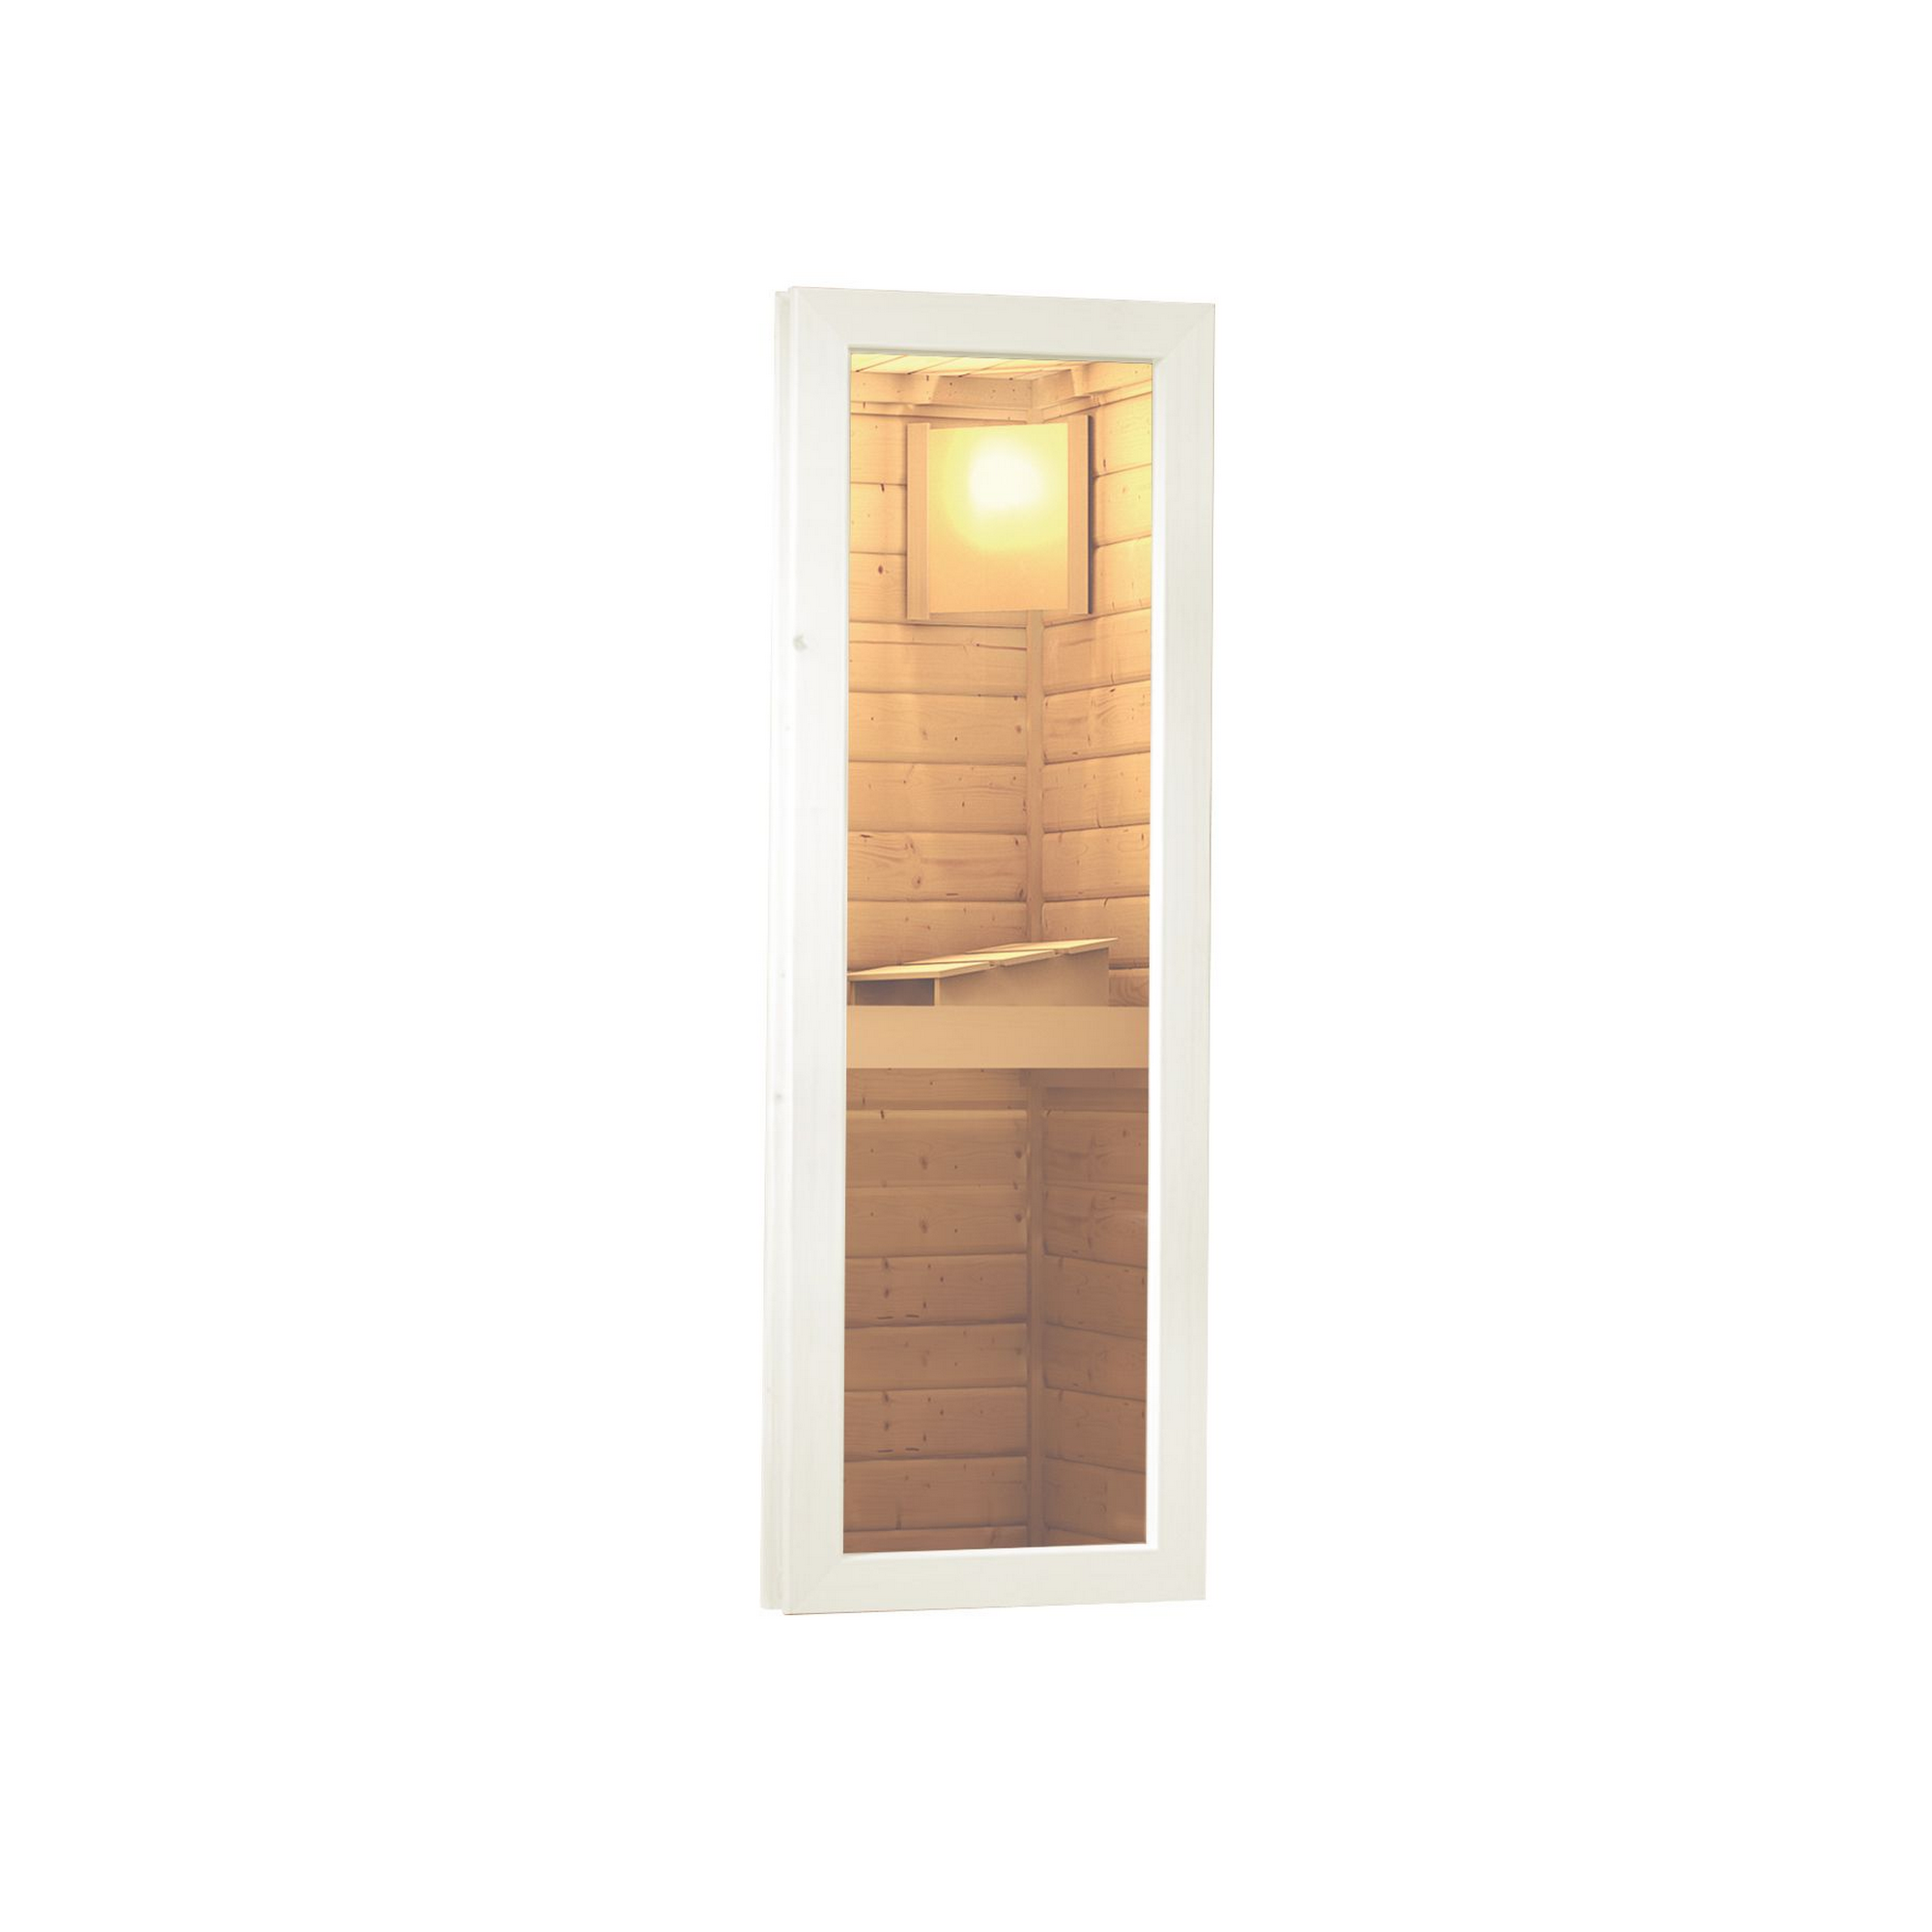 Saunahaus 'Skrollan 2' terragrau mit moderner Tür und Holzofen 336 x 231 x 227 cm + product picture